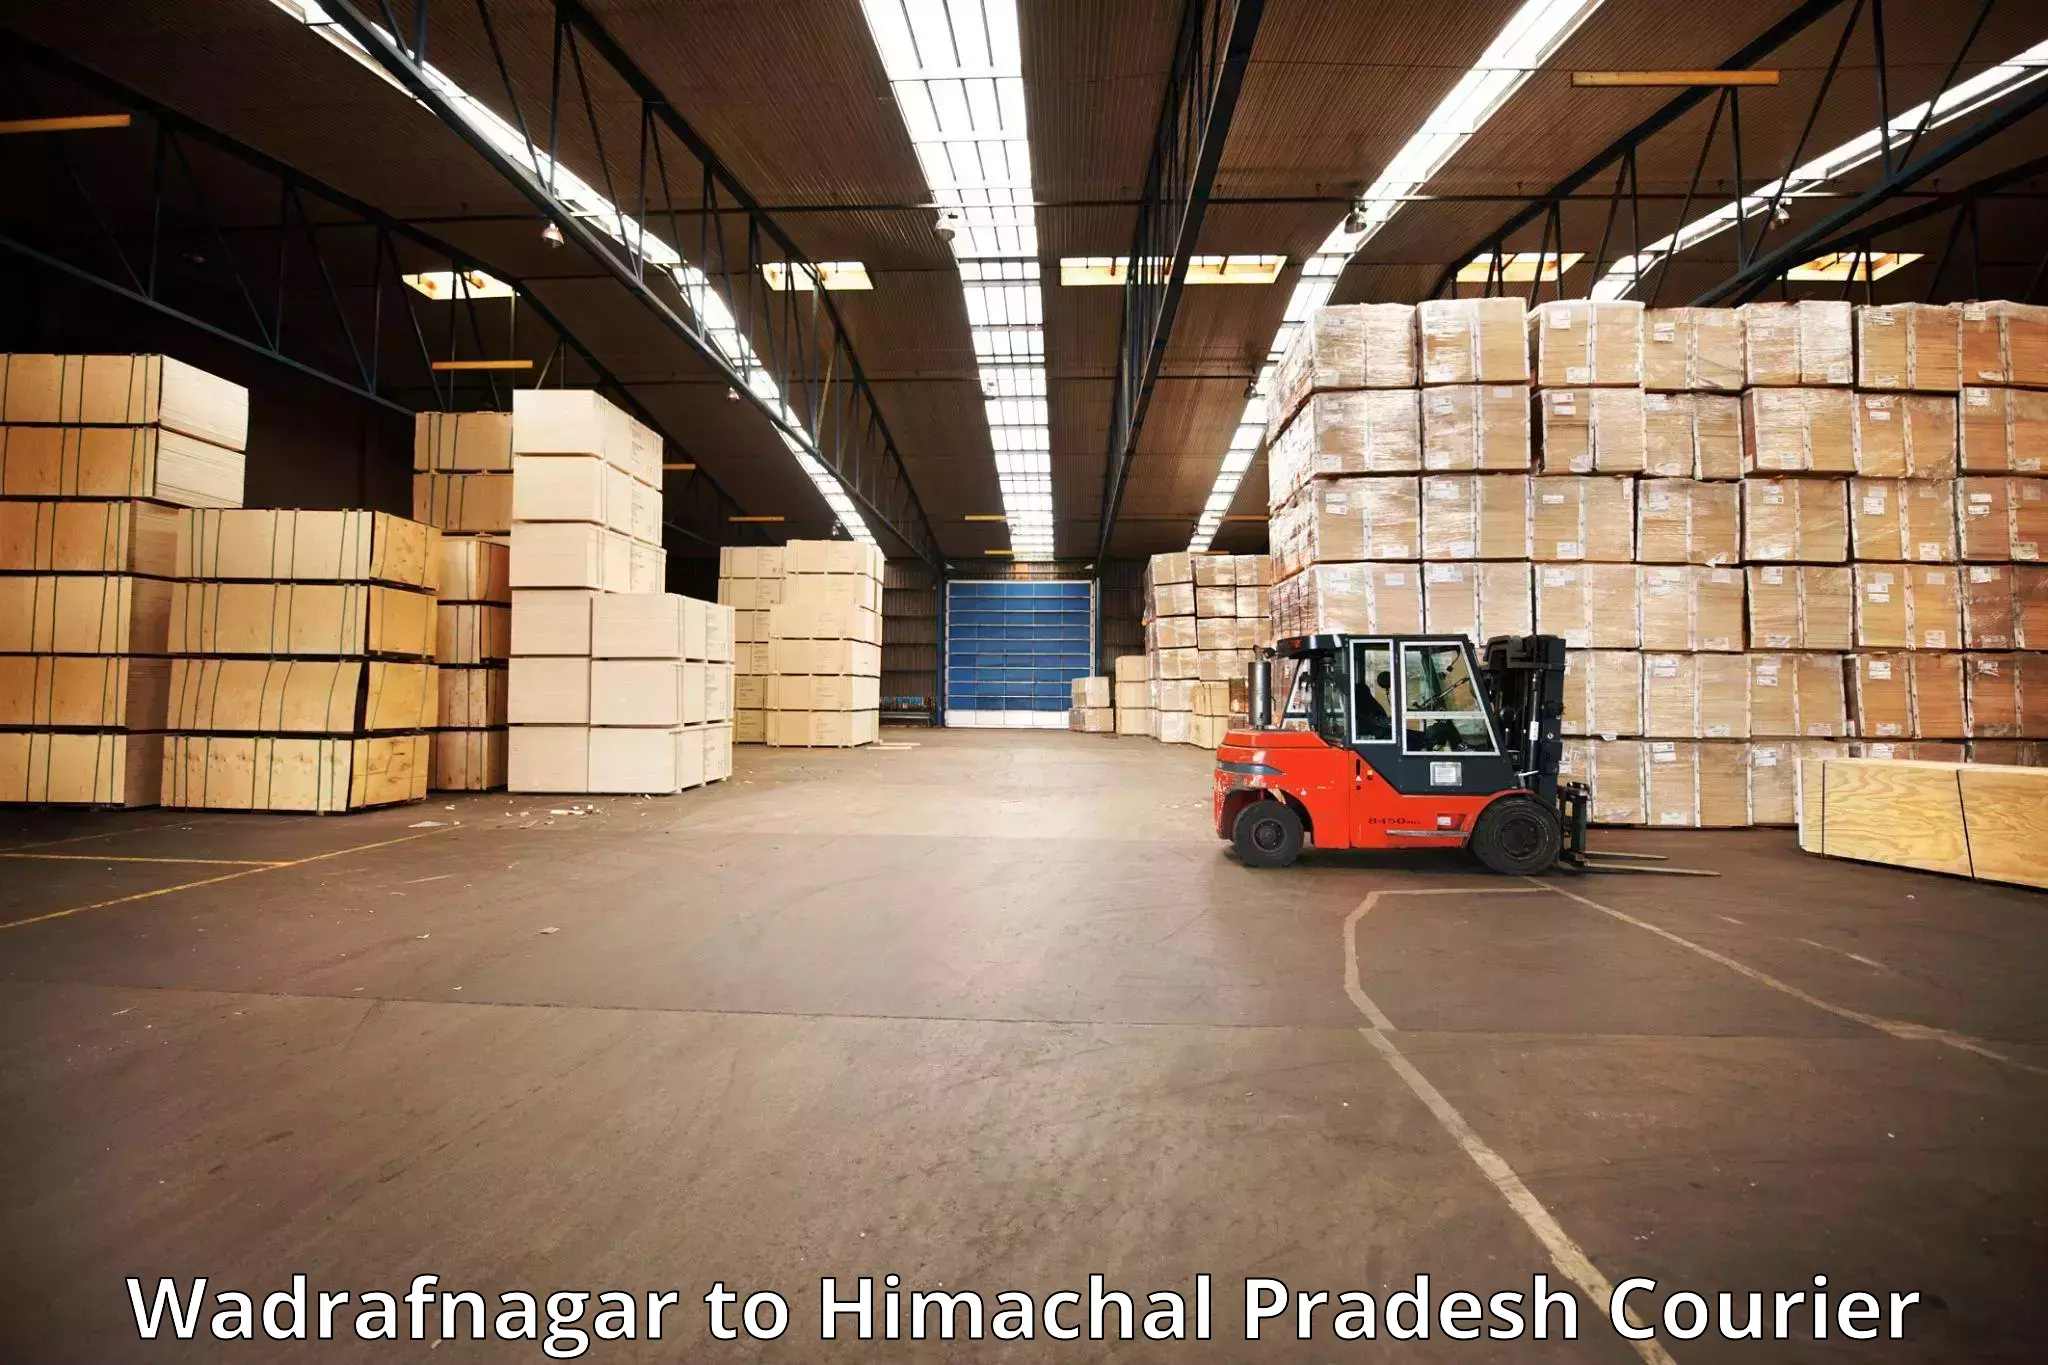 Luggage delivery system Wadrafnagar to Nerwa